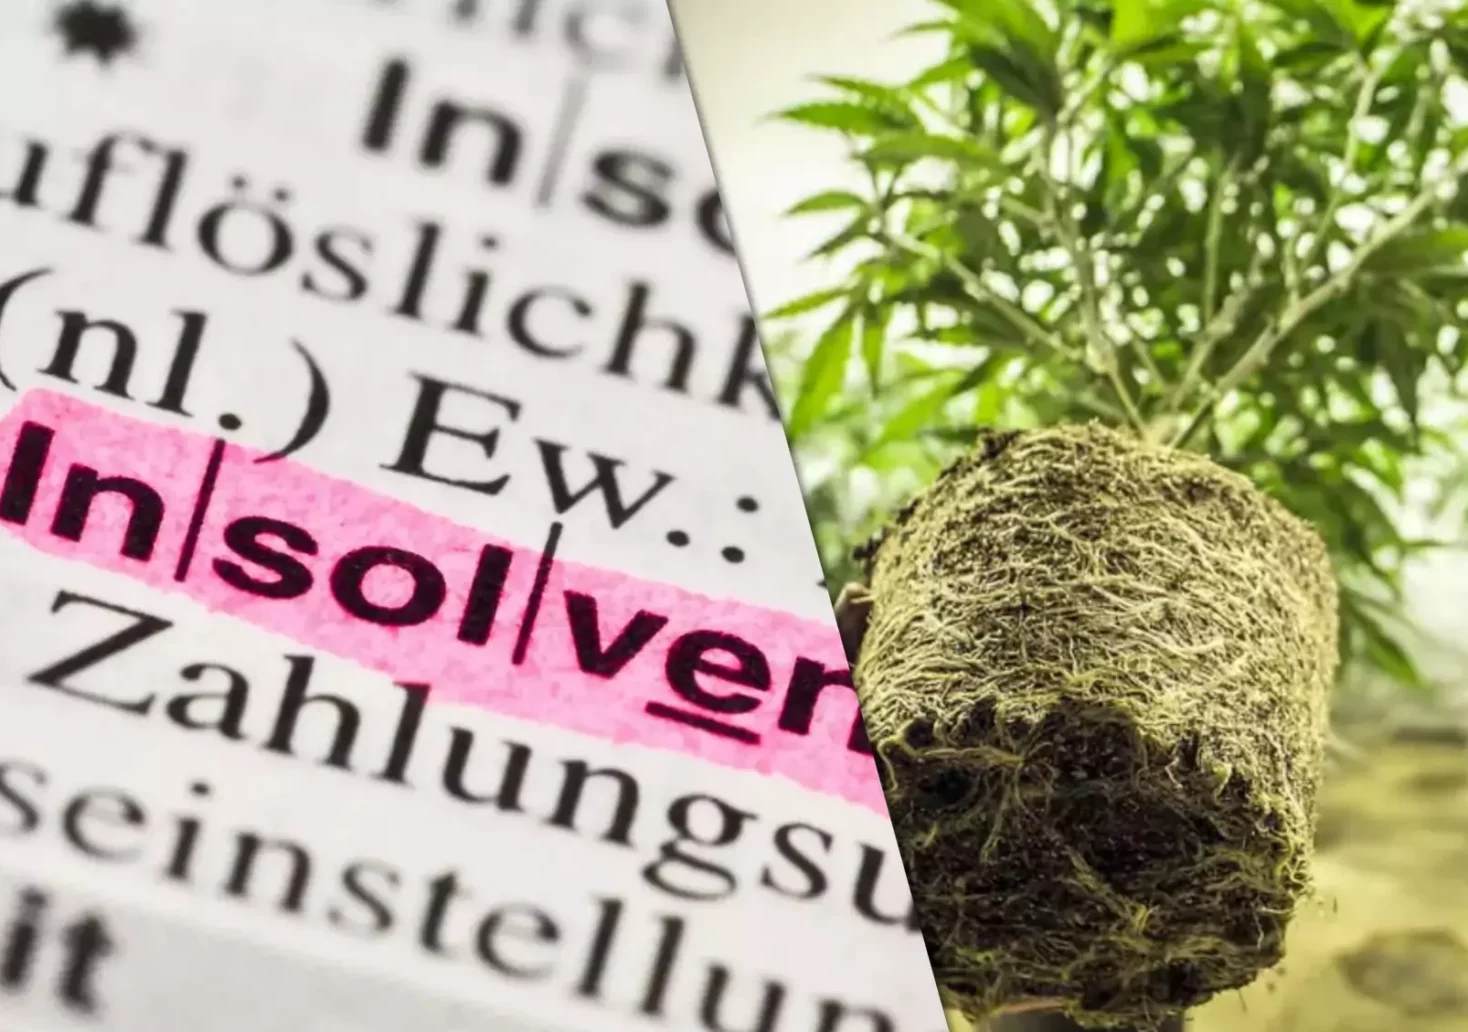 Ein Bild auf 5min.at zeigt links ein Wörterbuch, in dem das Wort Insolvenz pink hervorgehoben wurde und rechts eine Cannabispflanze.